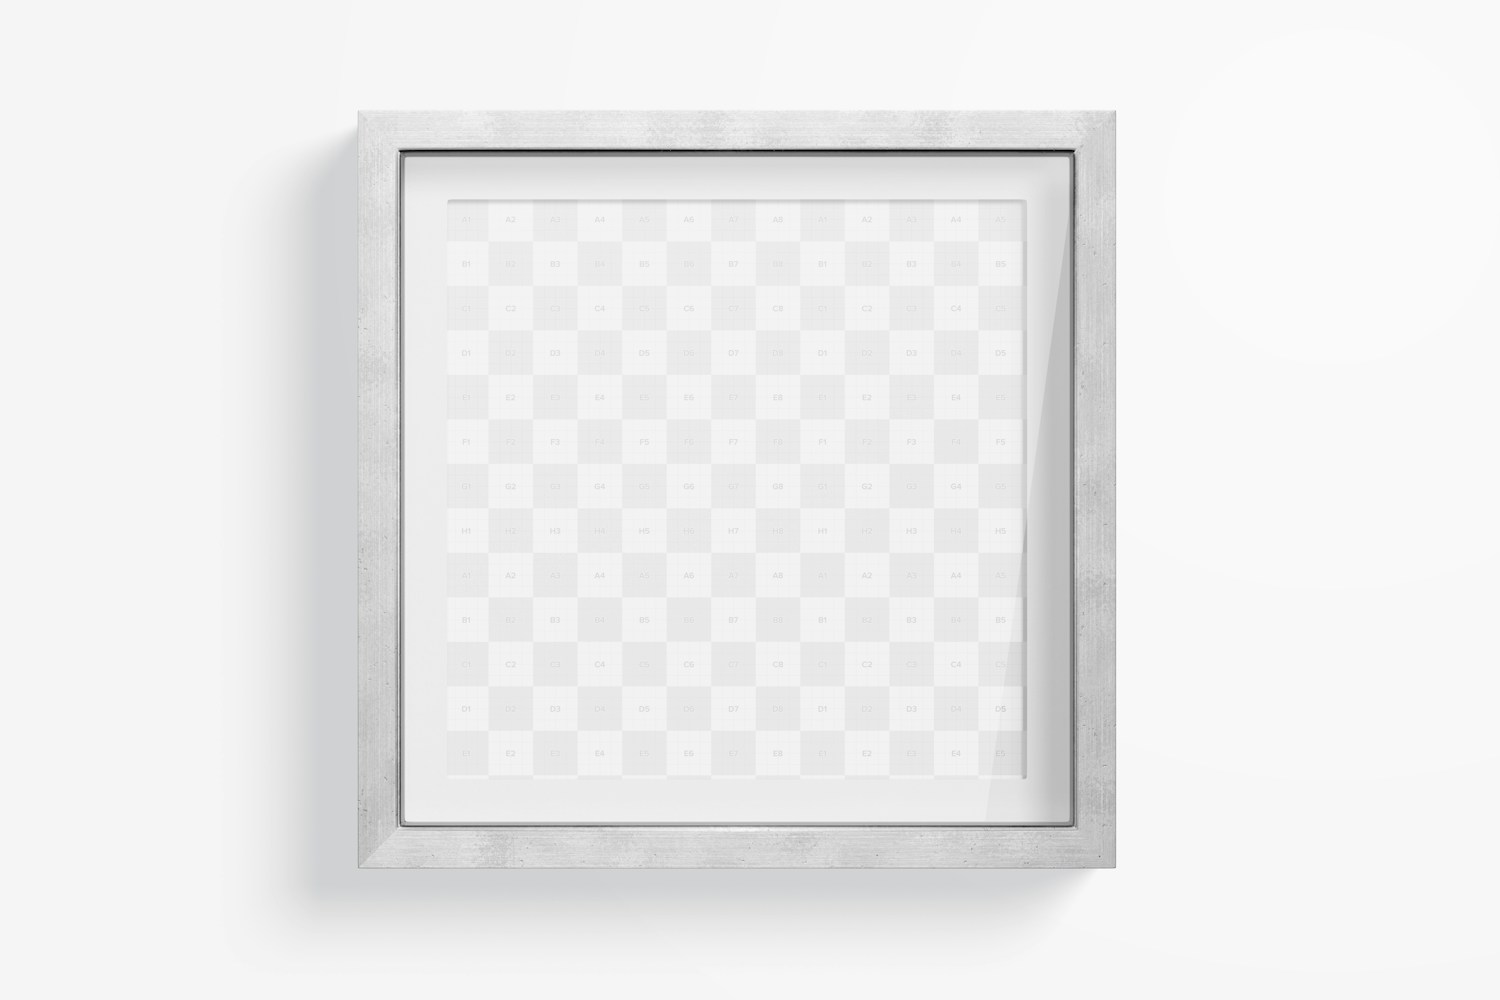 Square Metallic Shadow Box Frame Mockup